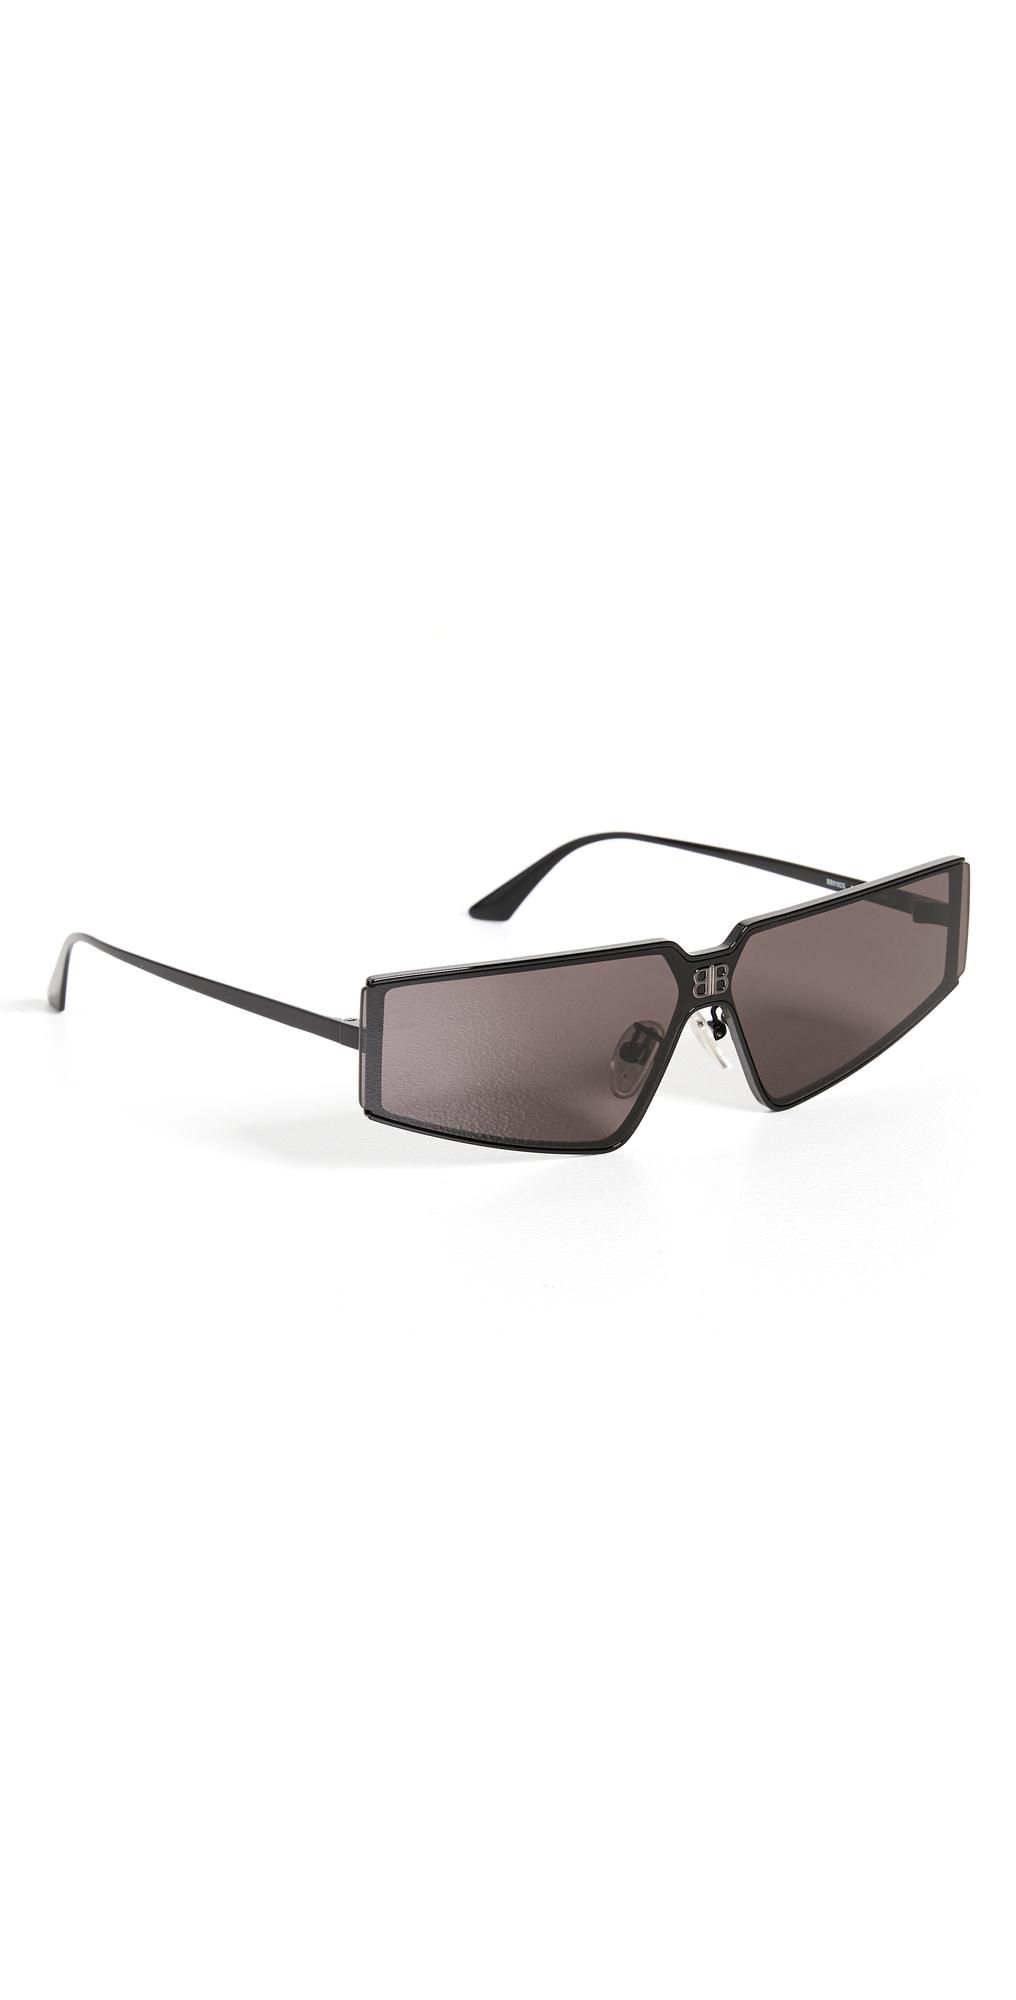 Balenciaga Shield Sunglasses in black